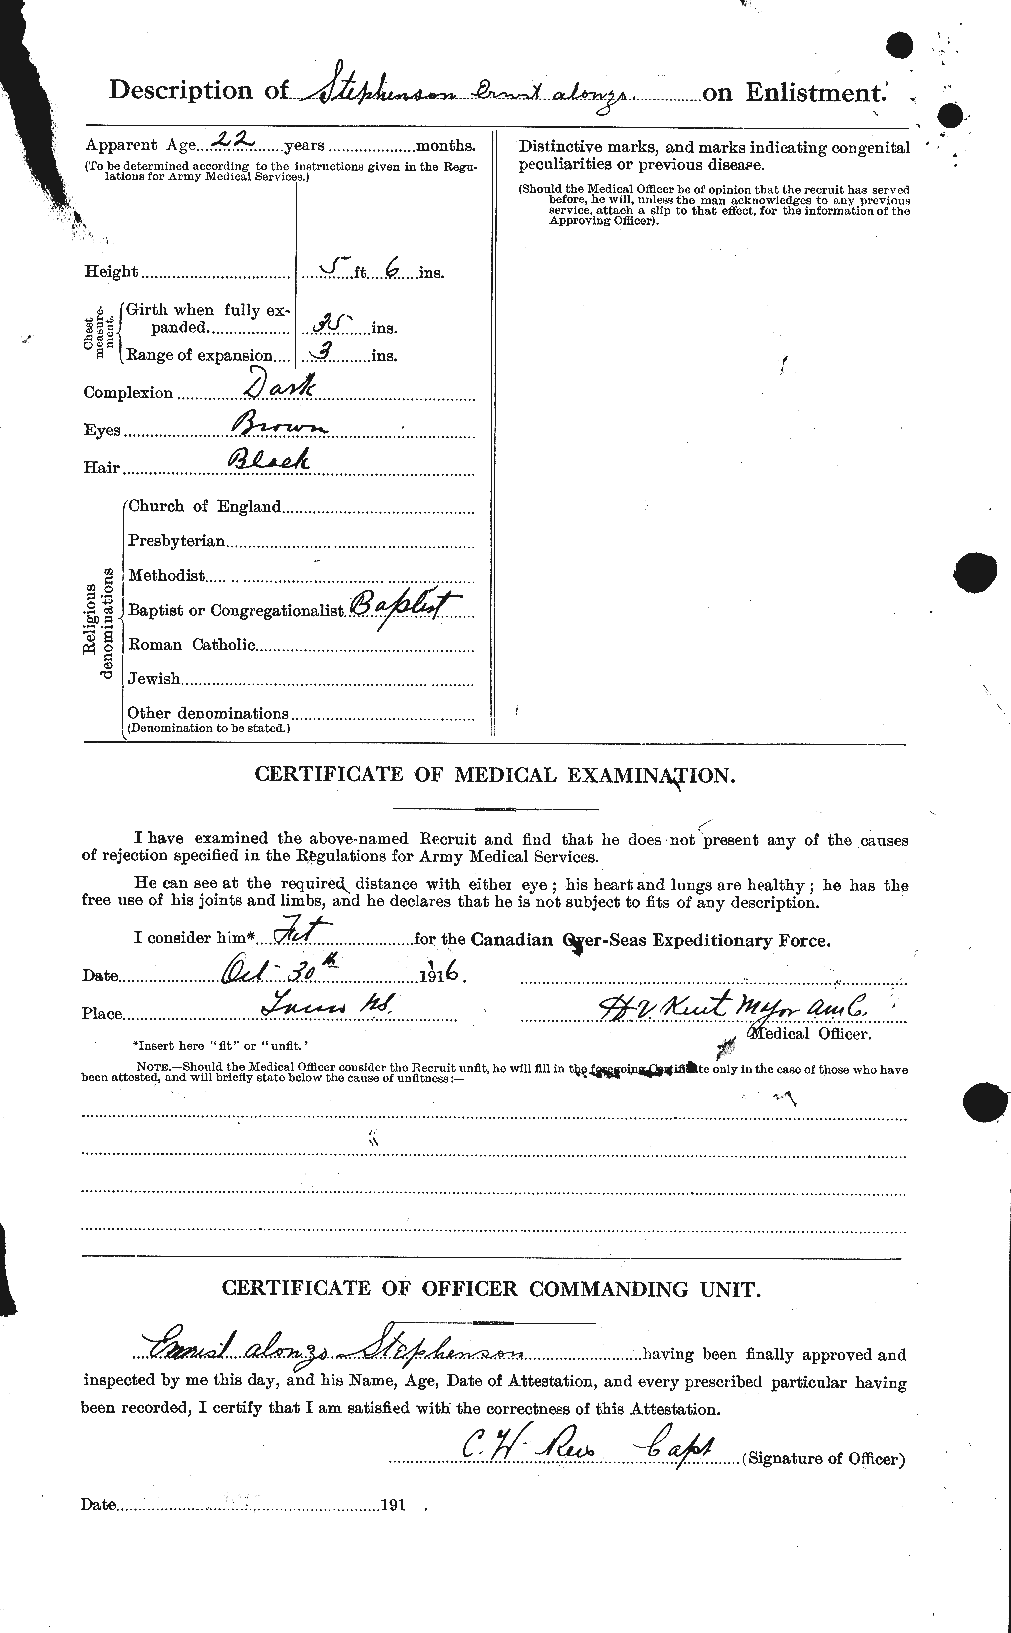 Dossiers du Personnel de la Première Guerre mondiale - CEC 119129b